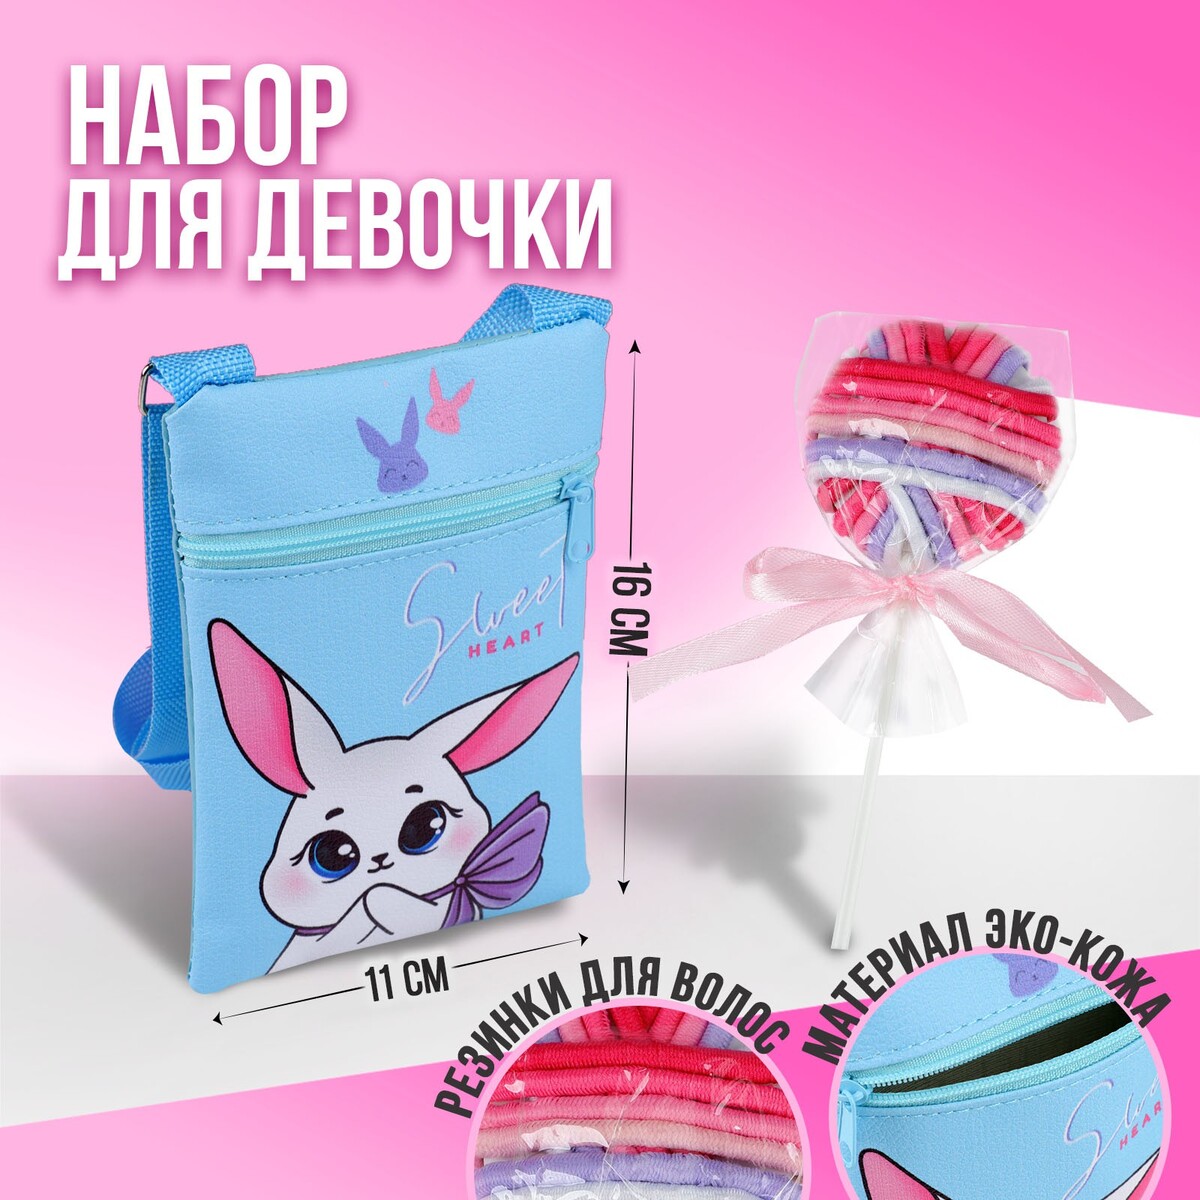 Набор для девочки белый зайчик: сумка и резинки для волос, цвет голубой/розовый bondibon набор для творчества кружка подарок зайчик